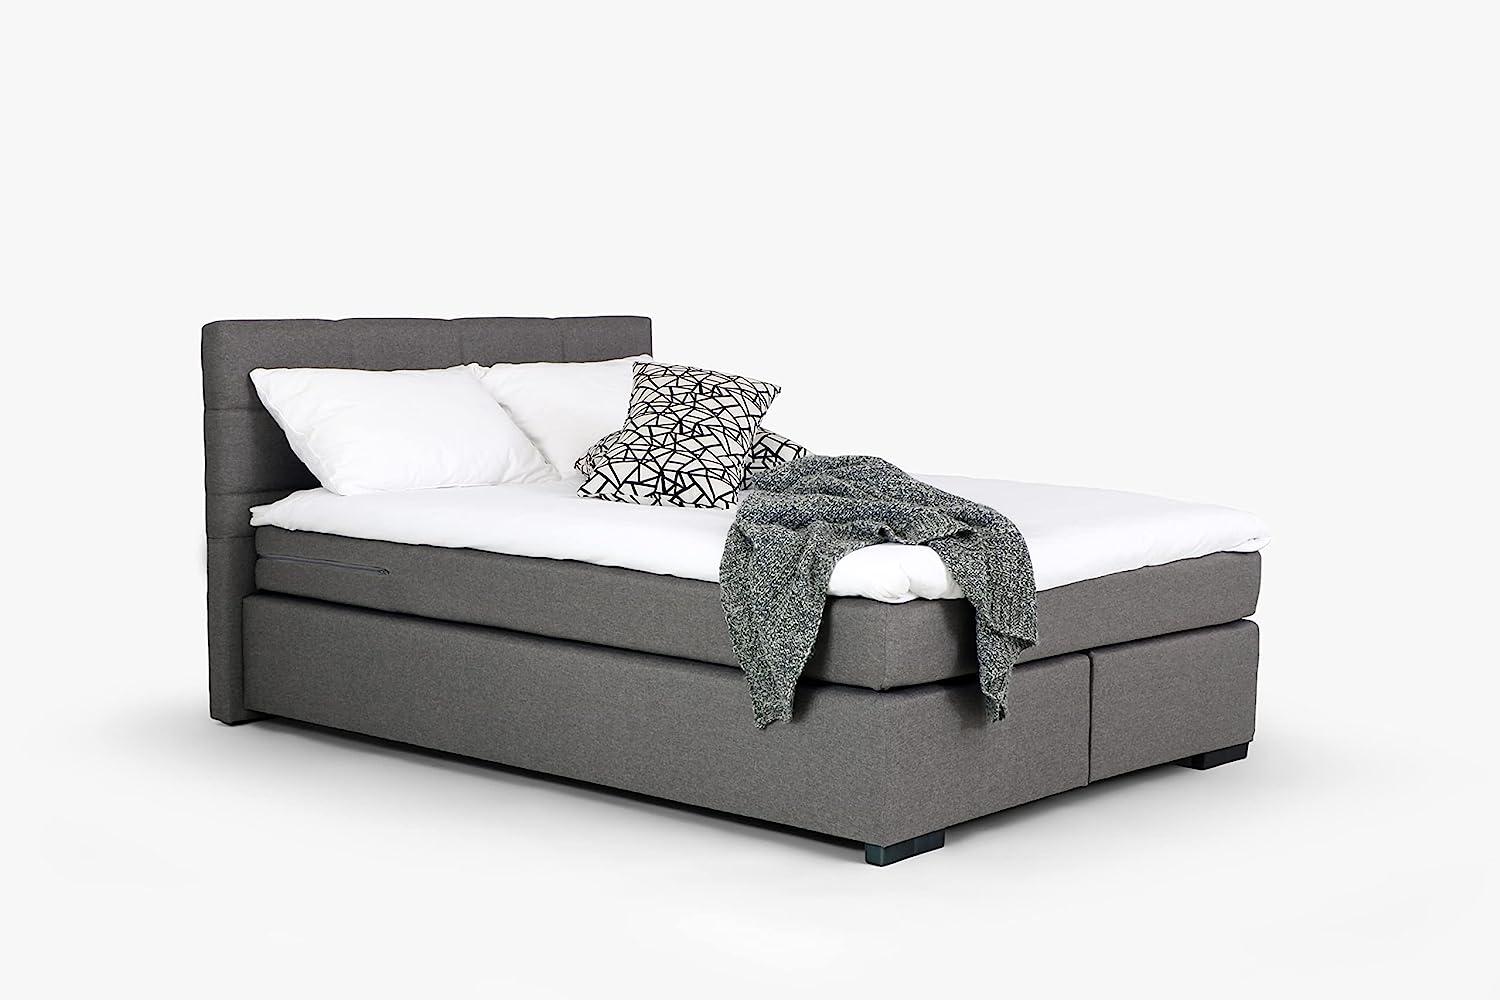 Mivano Beast Boxbett, Komfortables Bett mit Durchgehender Matratze (H3) und Topper, Flachgewebe Karoo Grau, Liegefläche 180 x 200 cm Bild 1